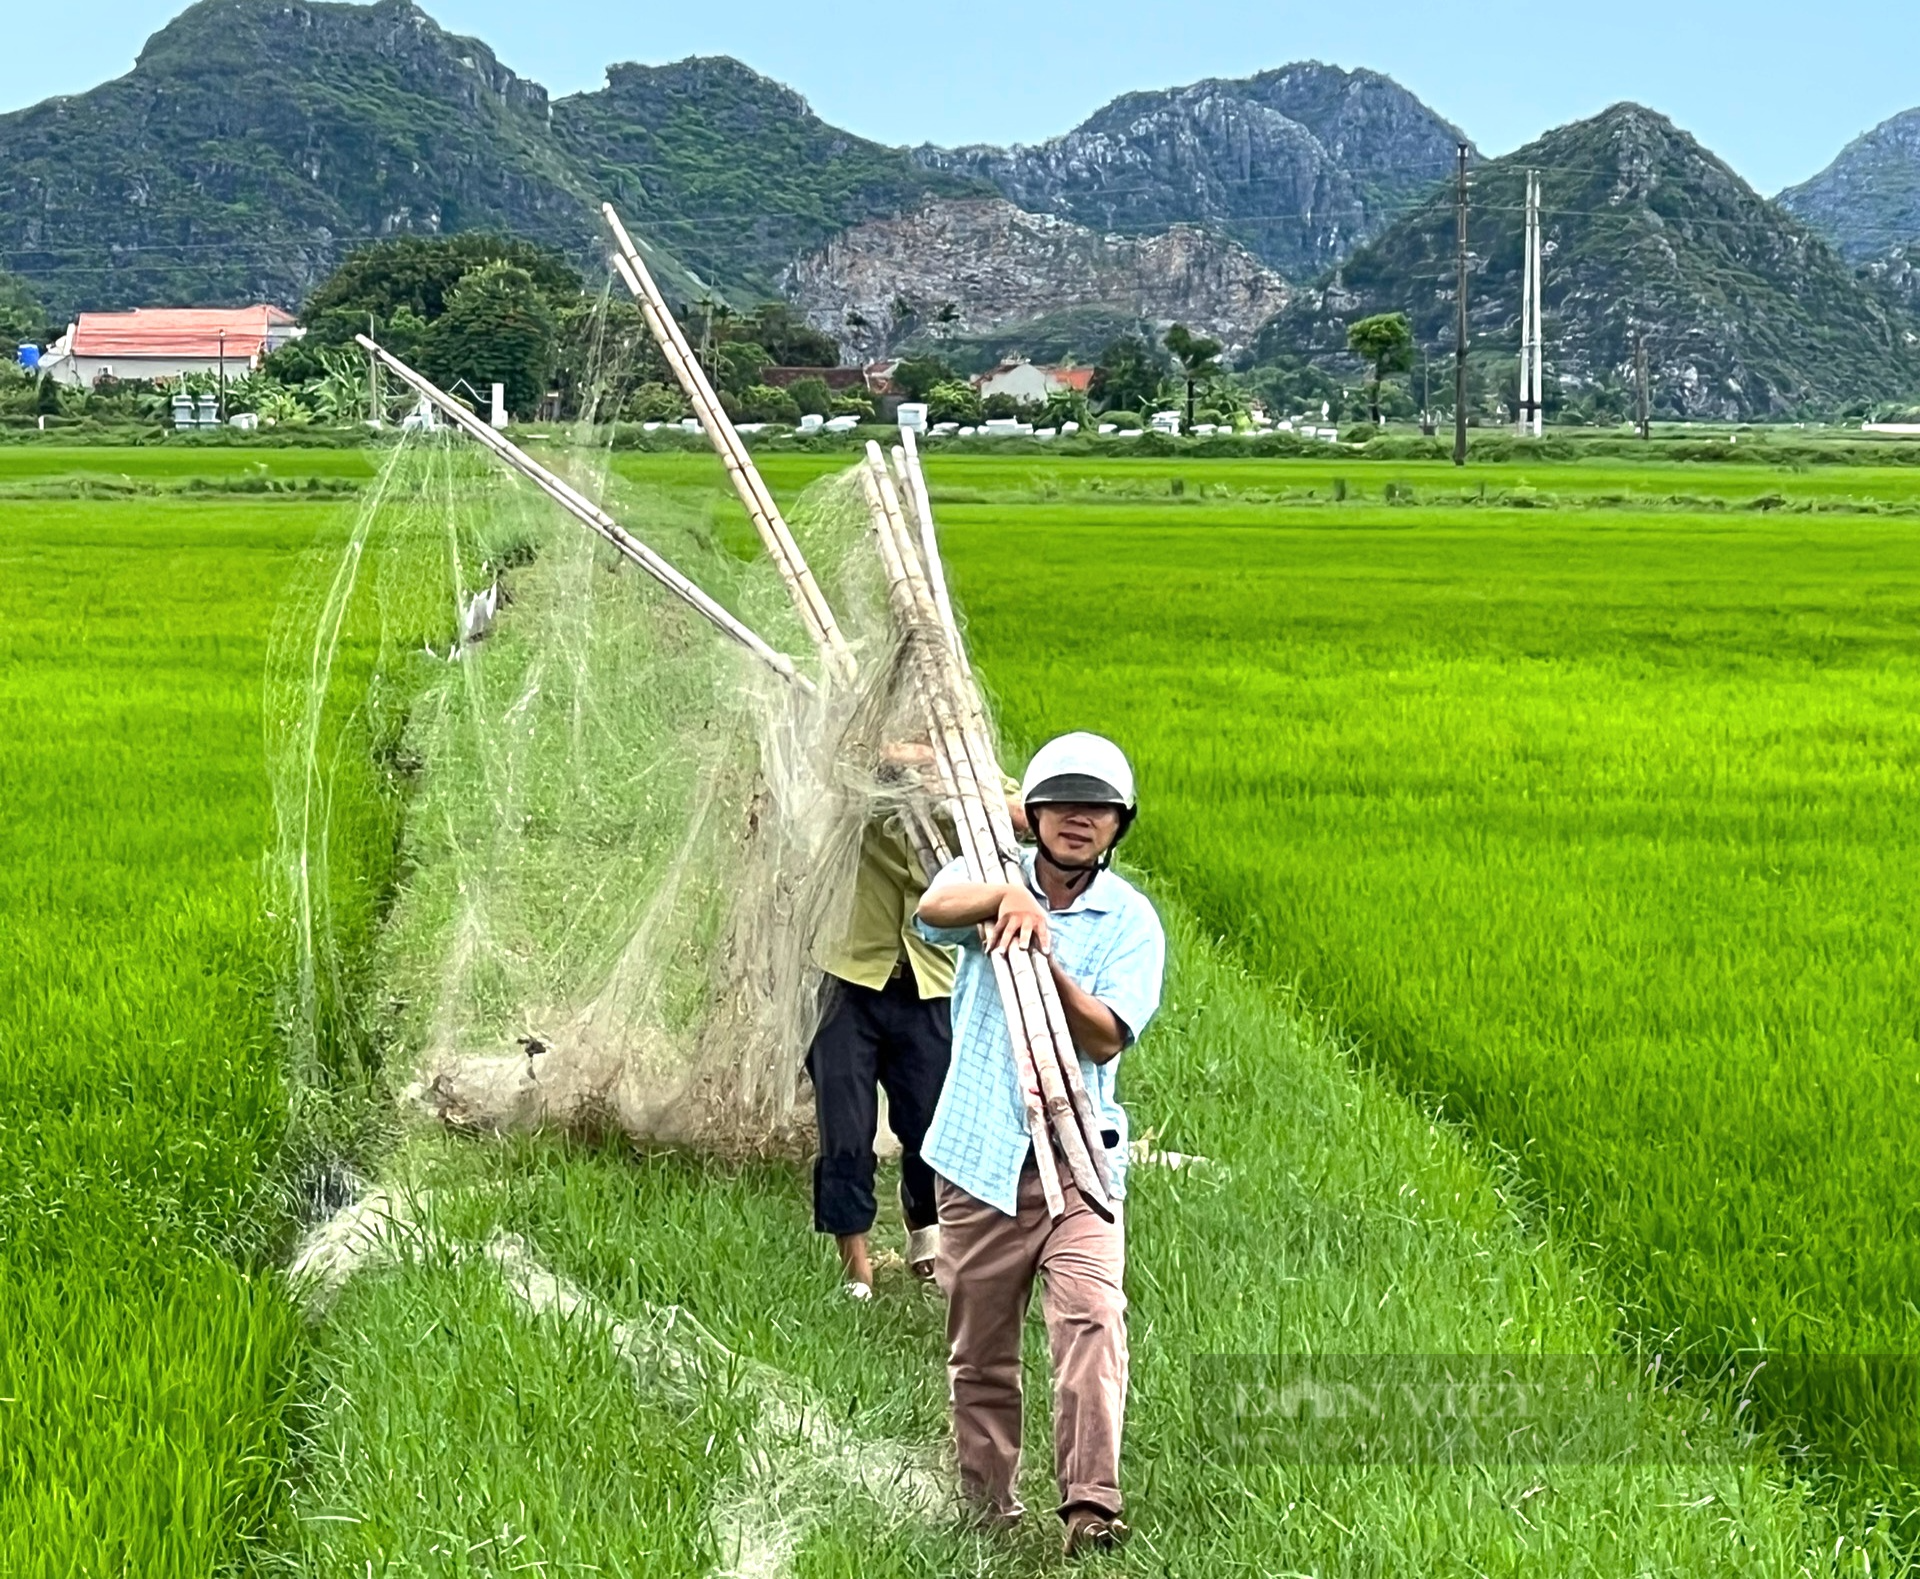 Ninh Bình: Liên tiếp tiêu hủy hàng trăm mét lưới, bộ loa âm ly dụ tiếng chim hoang dã sau phản ánh của Dân Việt - Ảnh 8.